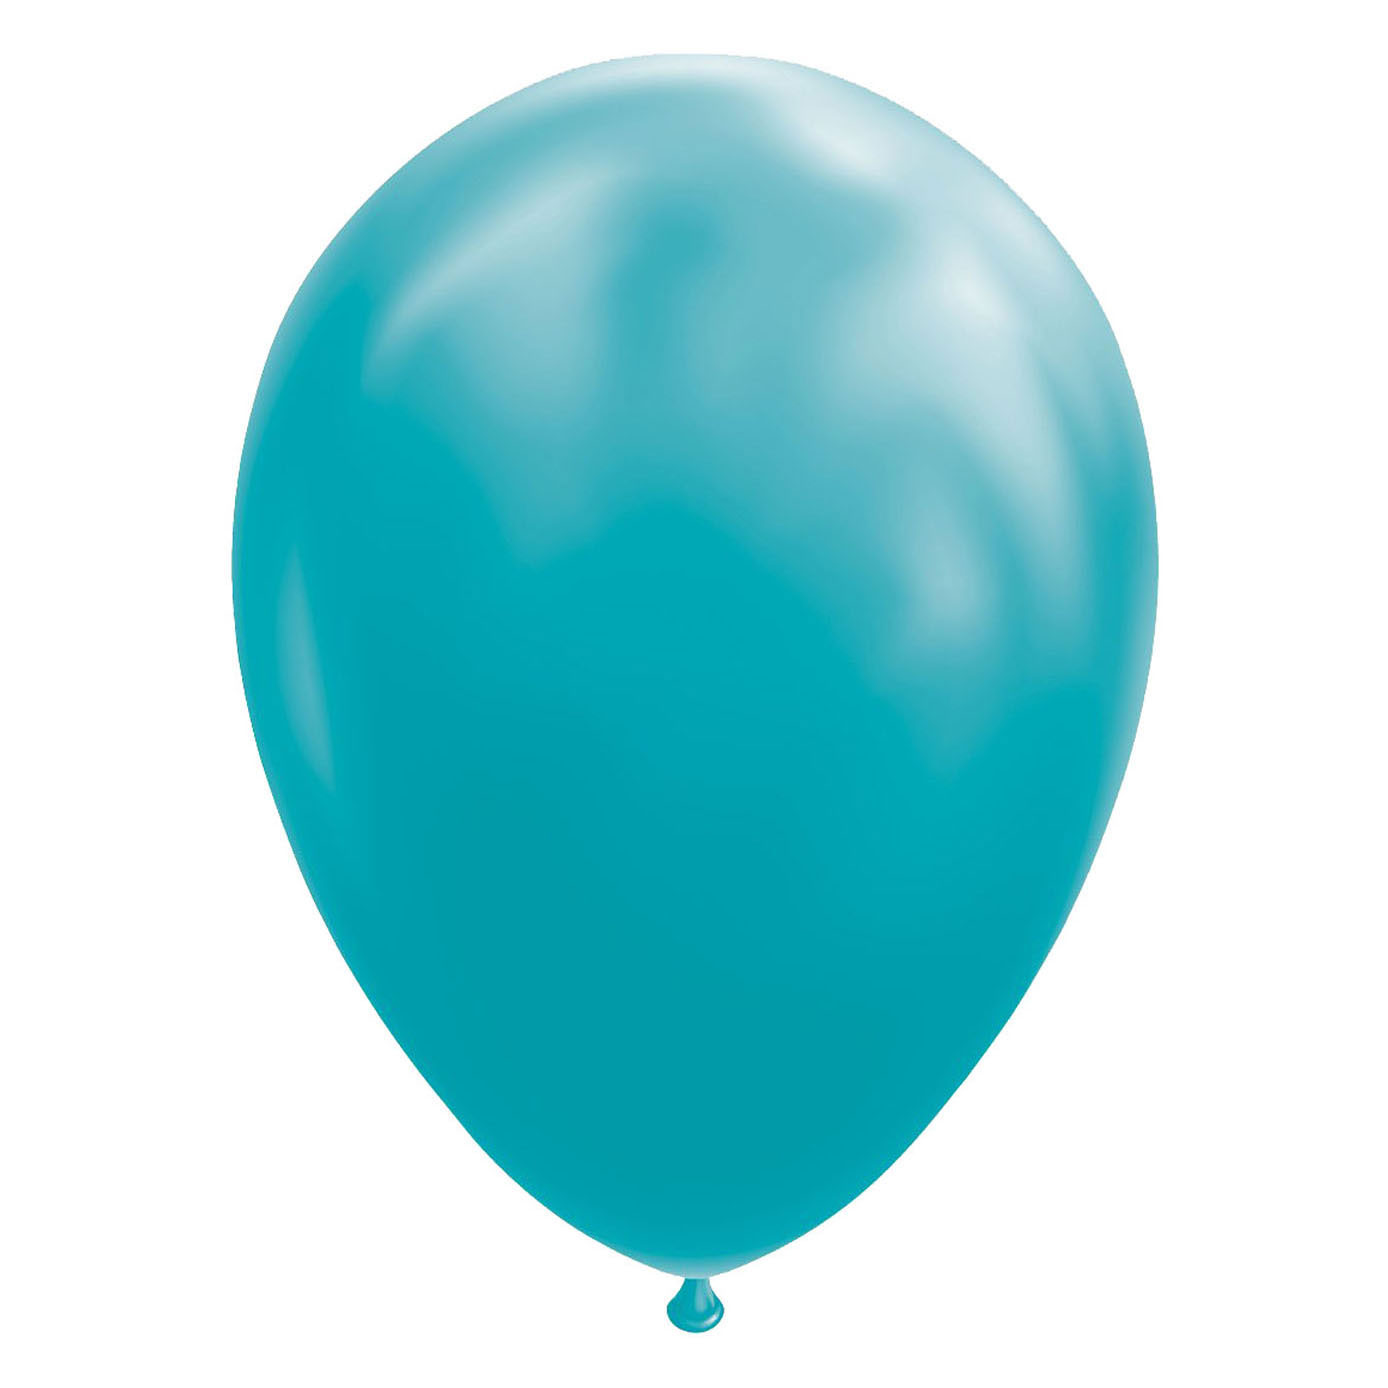 Ballons Turquoise, 30cm, 10pièces.